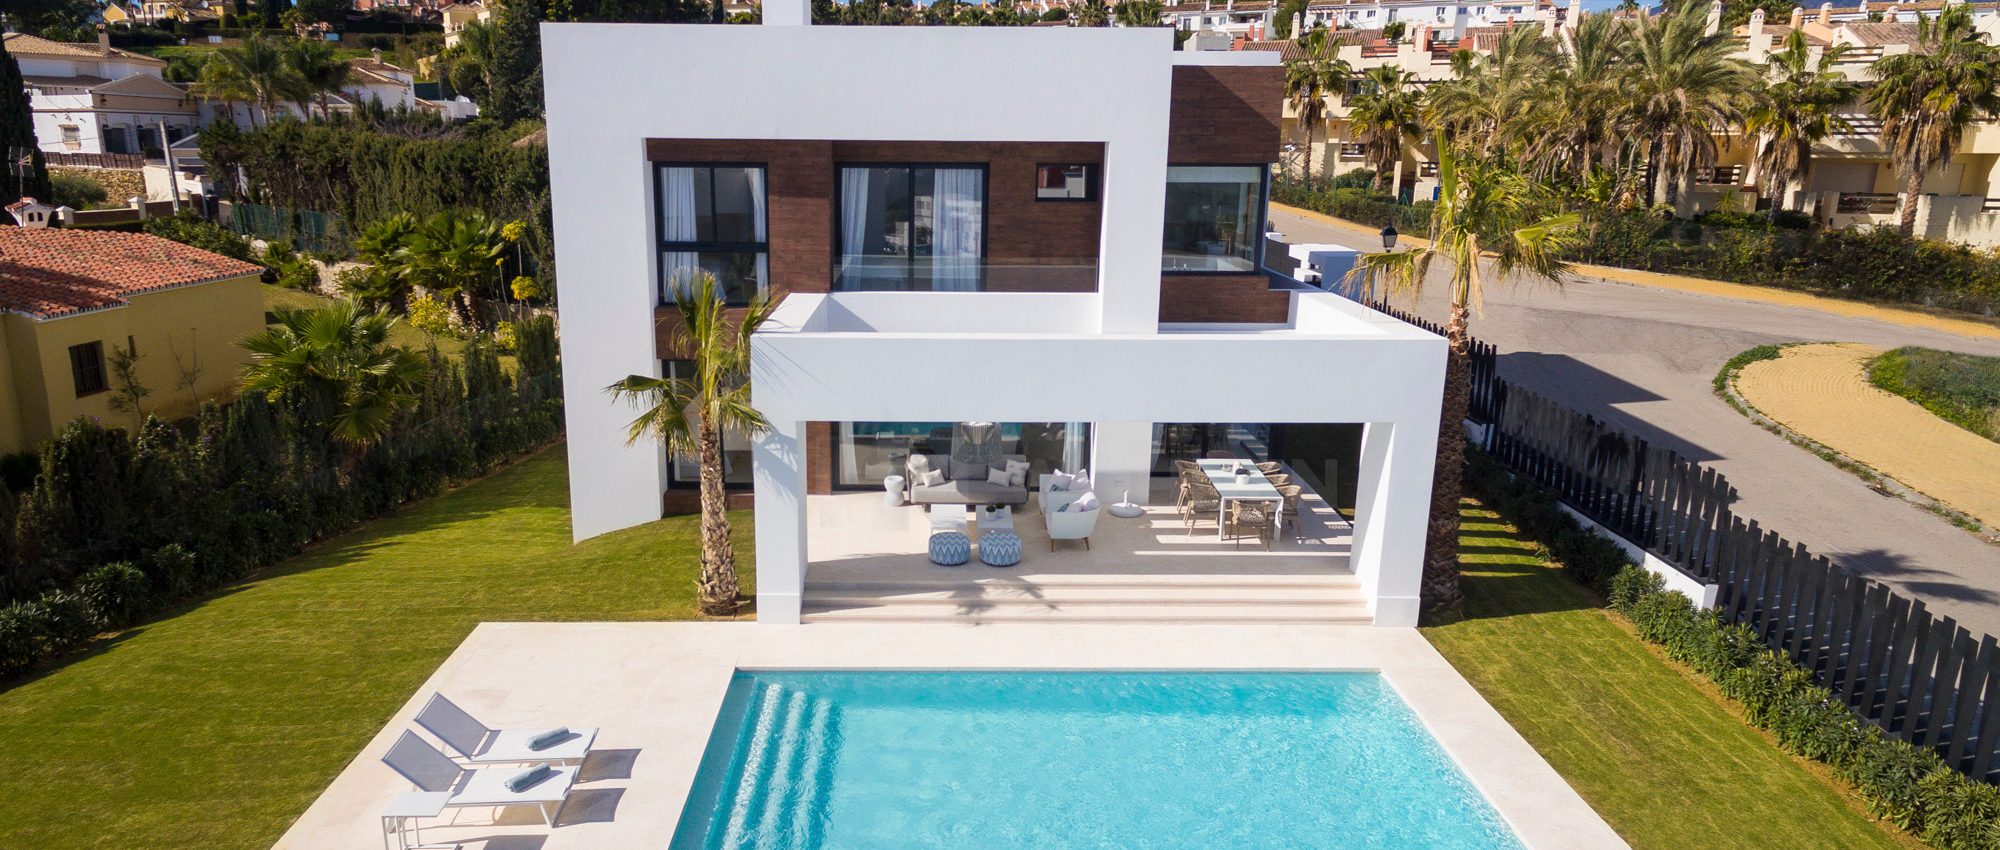 Stilvolle, moderne Villen an der neuen Goldenen Meile, in der Nähe von Puerto Banus und Marbella.